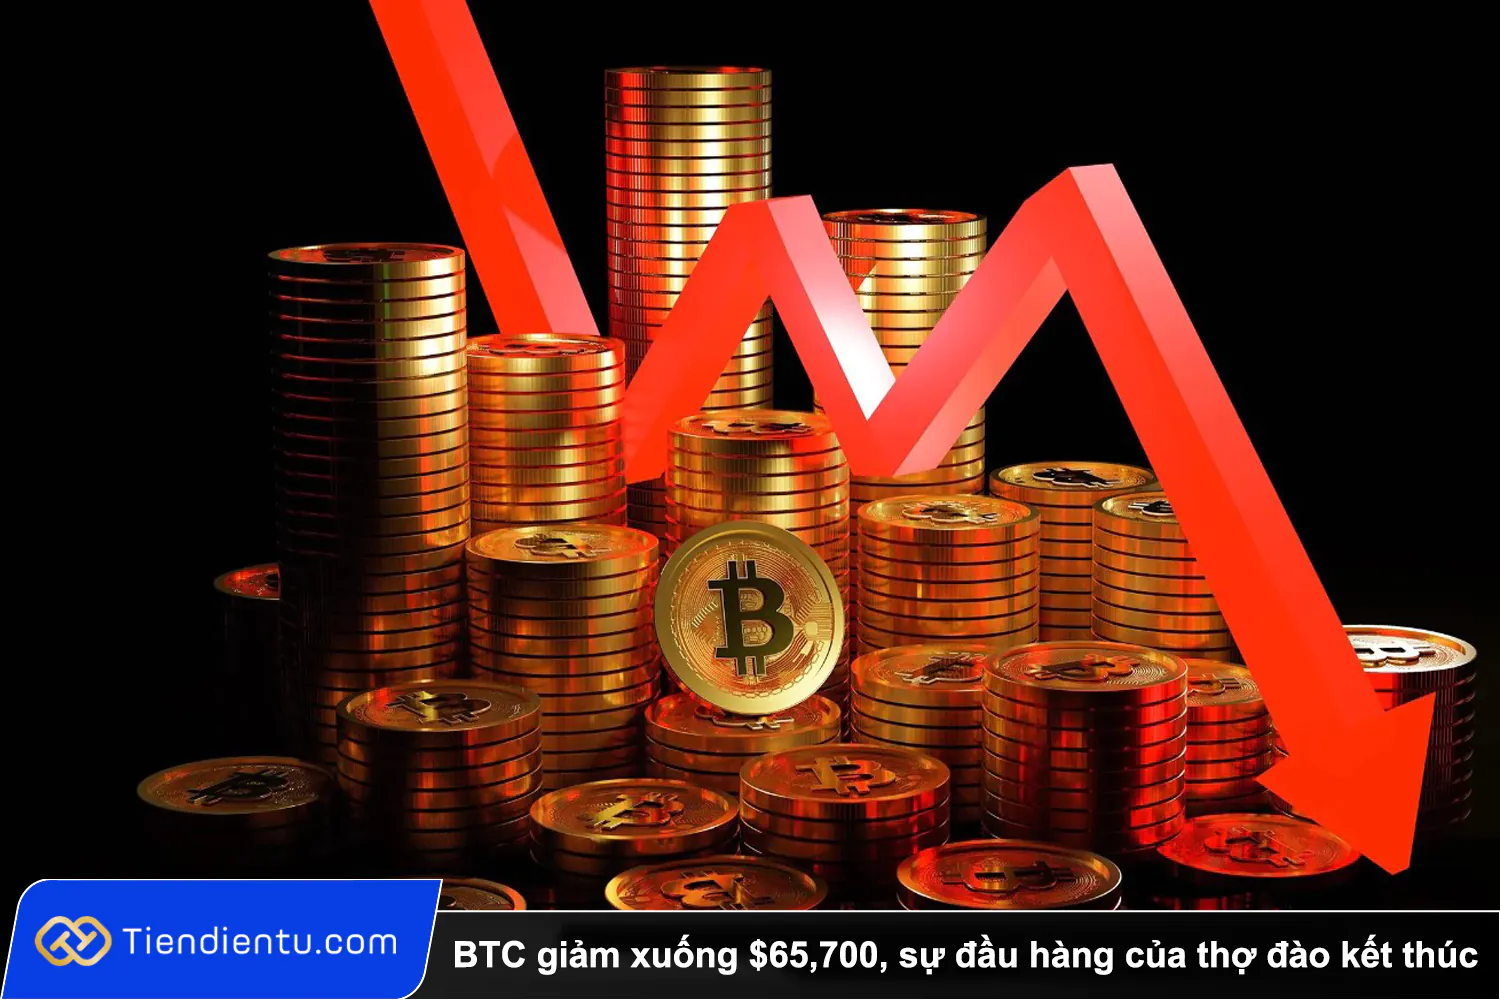 Tiendientu bitcoin giam xuong 65k su dau hang tho dao